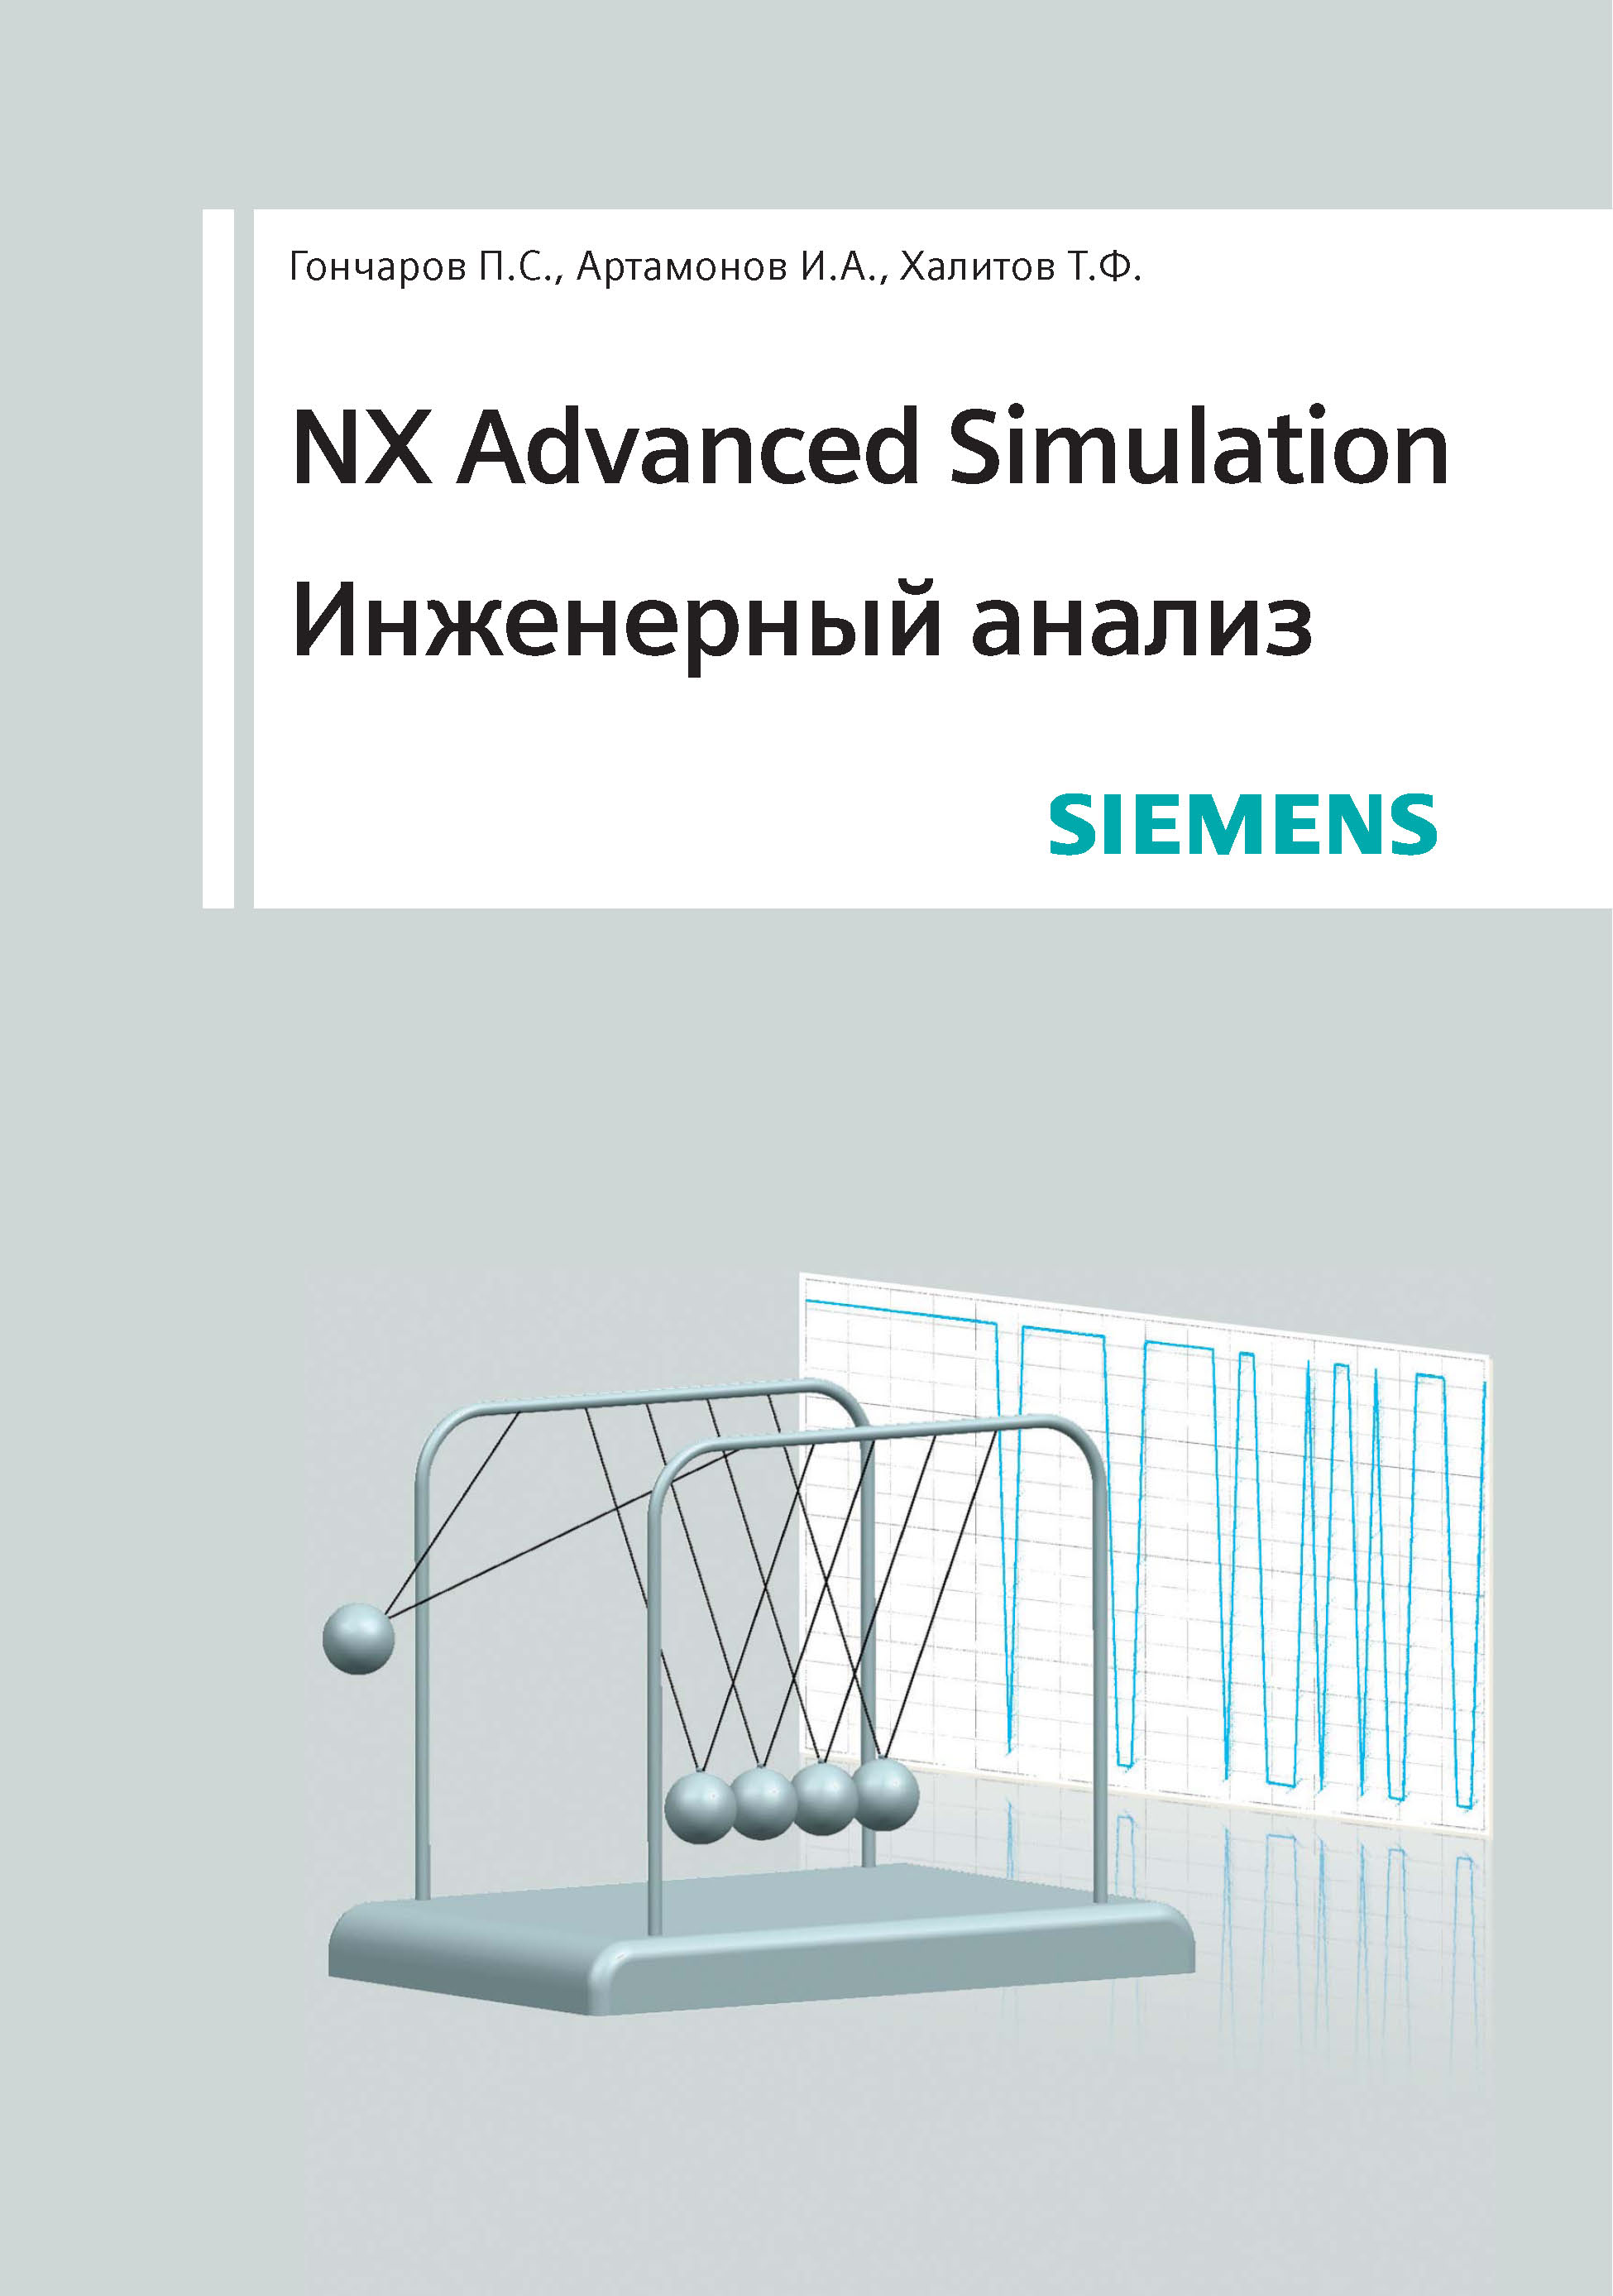 Книга  NX Advanced Simulation. Инженерный анализ созданная Т. Ф. Халитов, С. В. Денисихин, П. С. Гончаров, Д. Е. Сотник, И. А. Артамонов может относится к жанру программы, проектирование. Стоимость электронной книги NX Advanced Simulation. Инженерный анализ с идентификатором 48411375 составляет 749.00 руб.